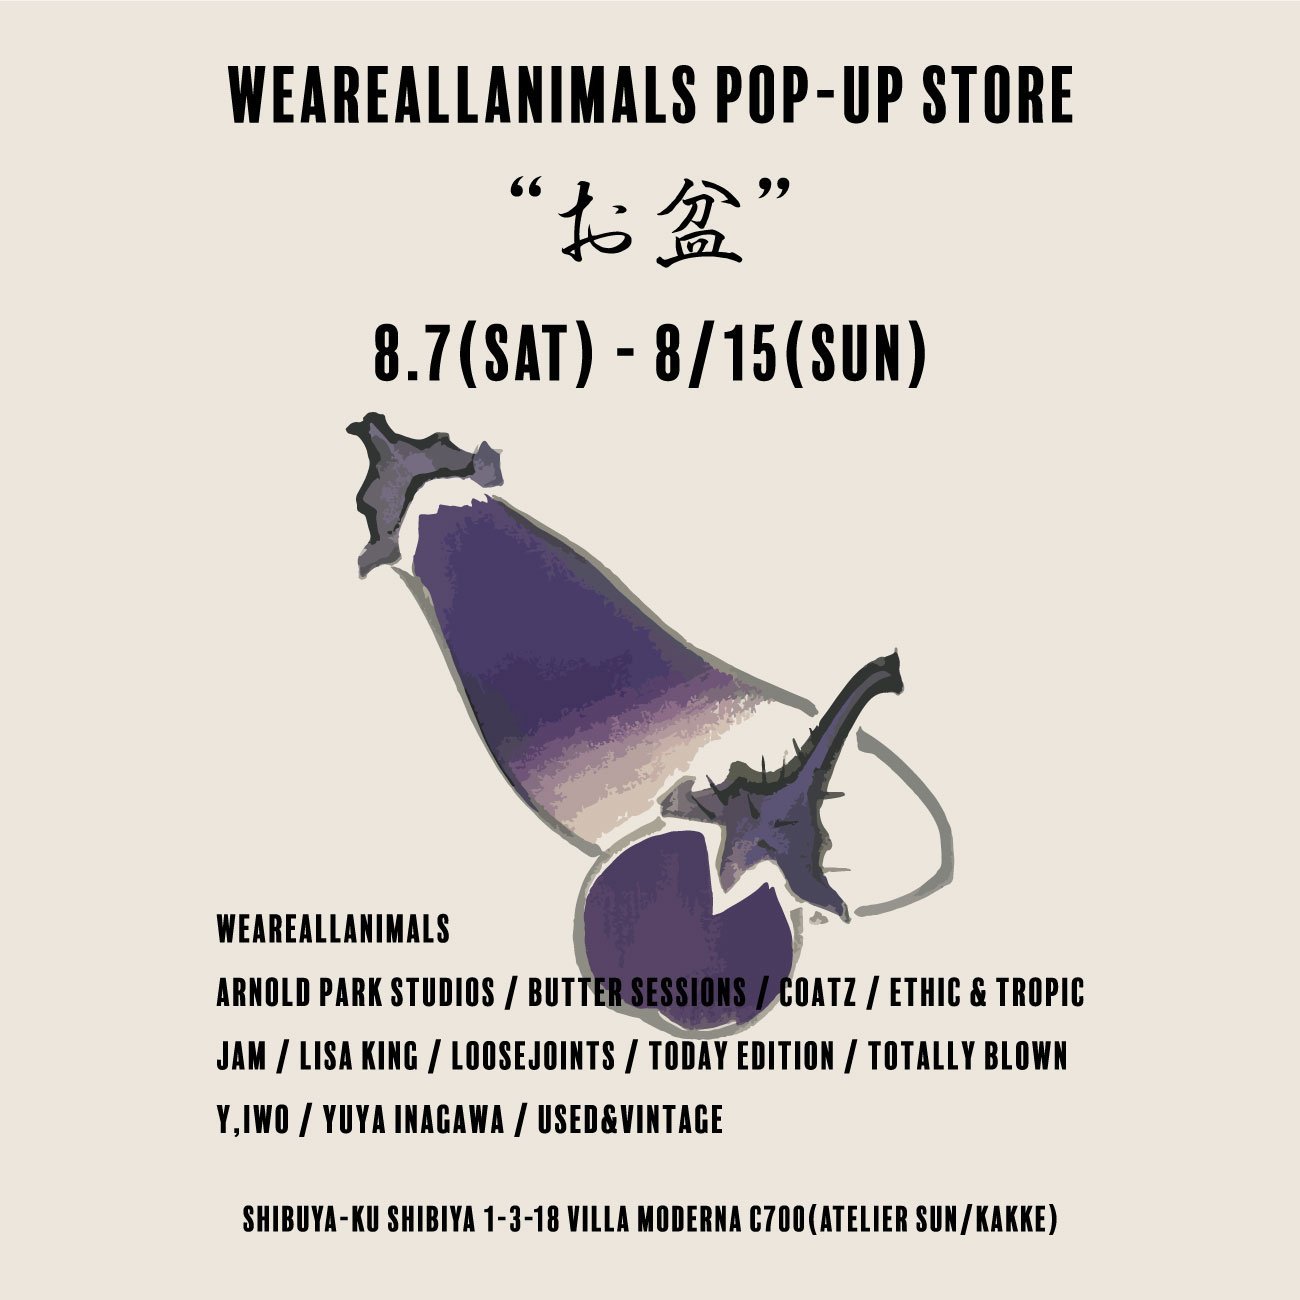 WEAREALLANIMALS POP-UP STORE “お盆” 8.7(sat) - 8.15(sun) 開催のお知らせ - WEAREALLANIMALS